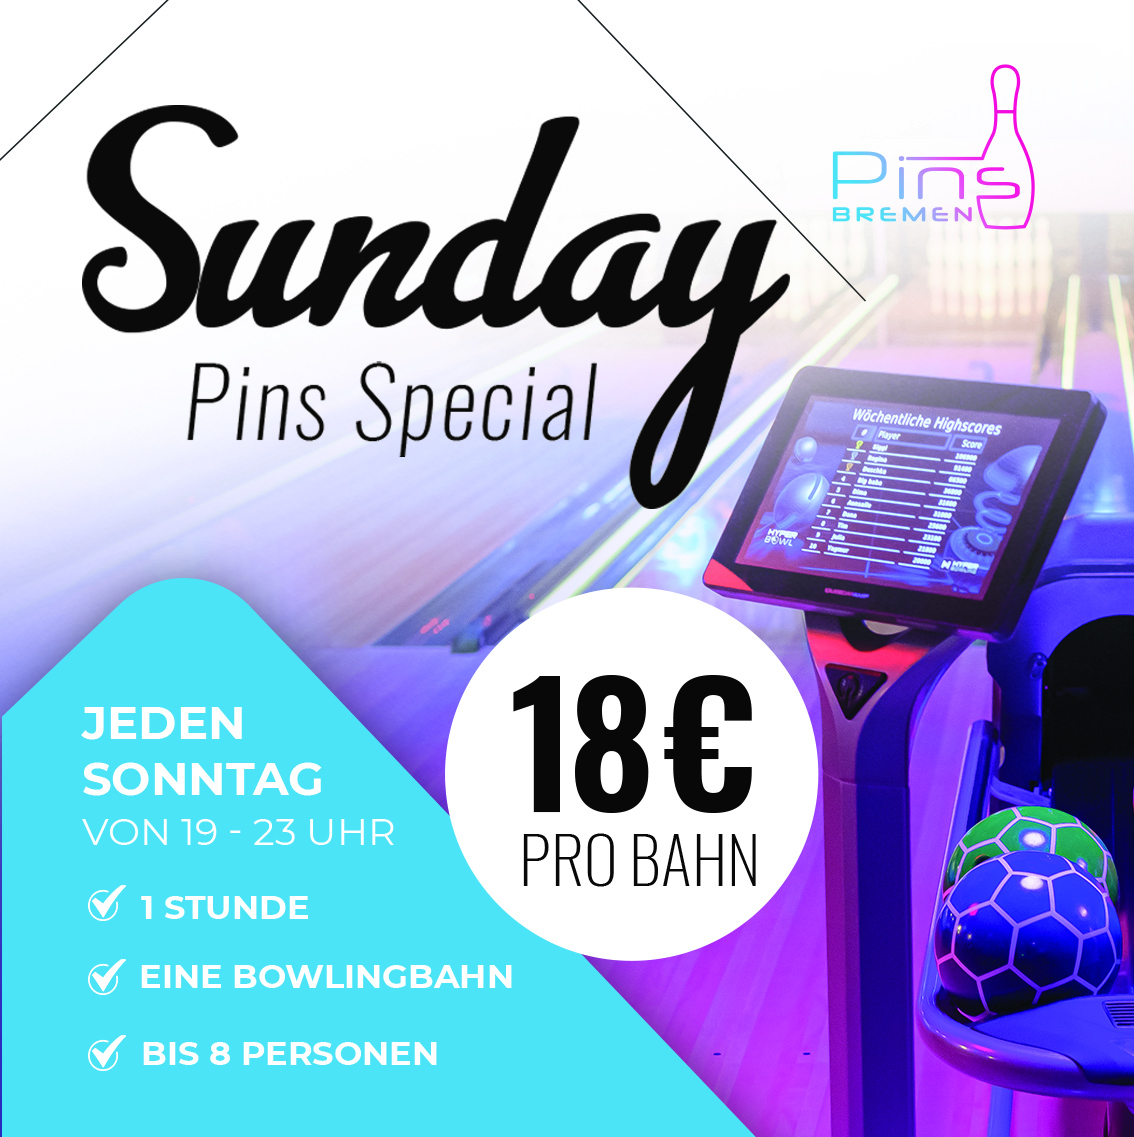 Willkommen zum Sunday Pins Special!